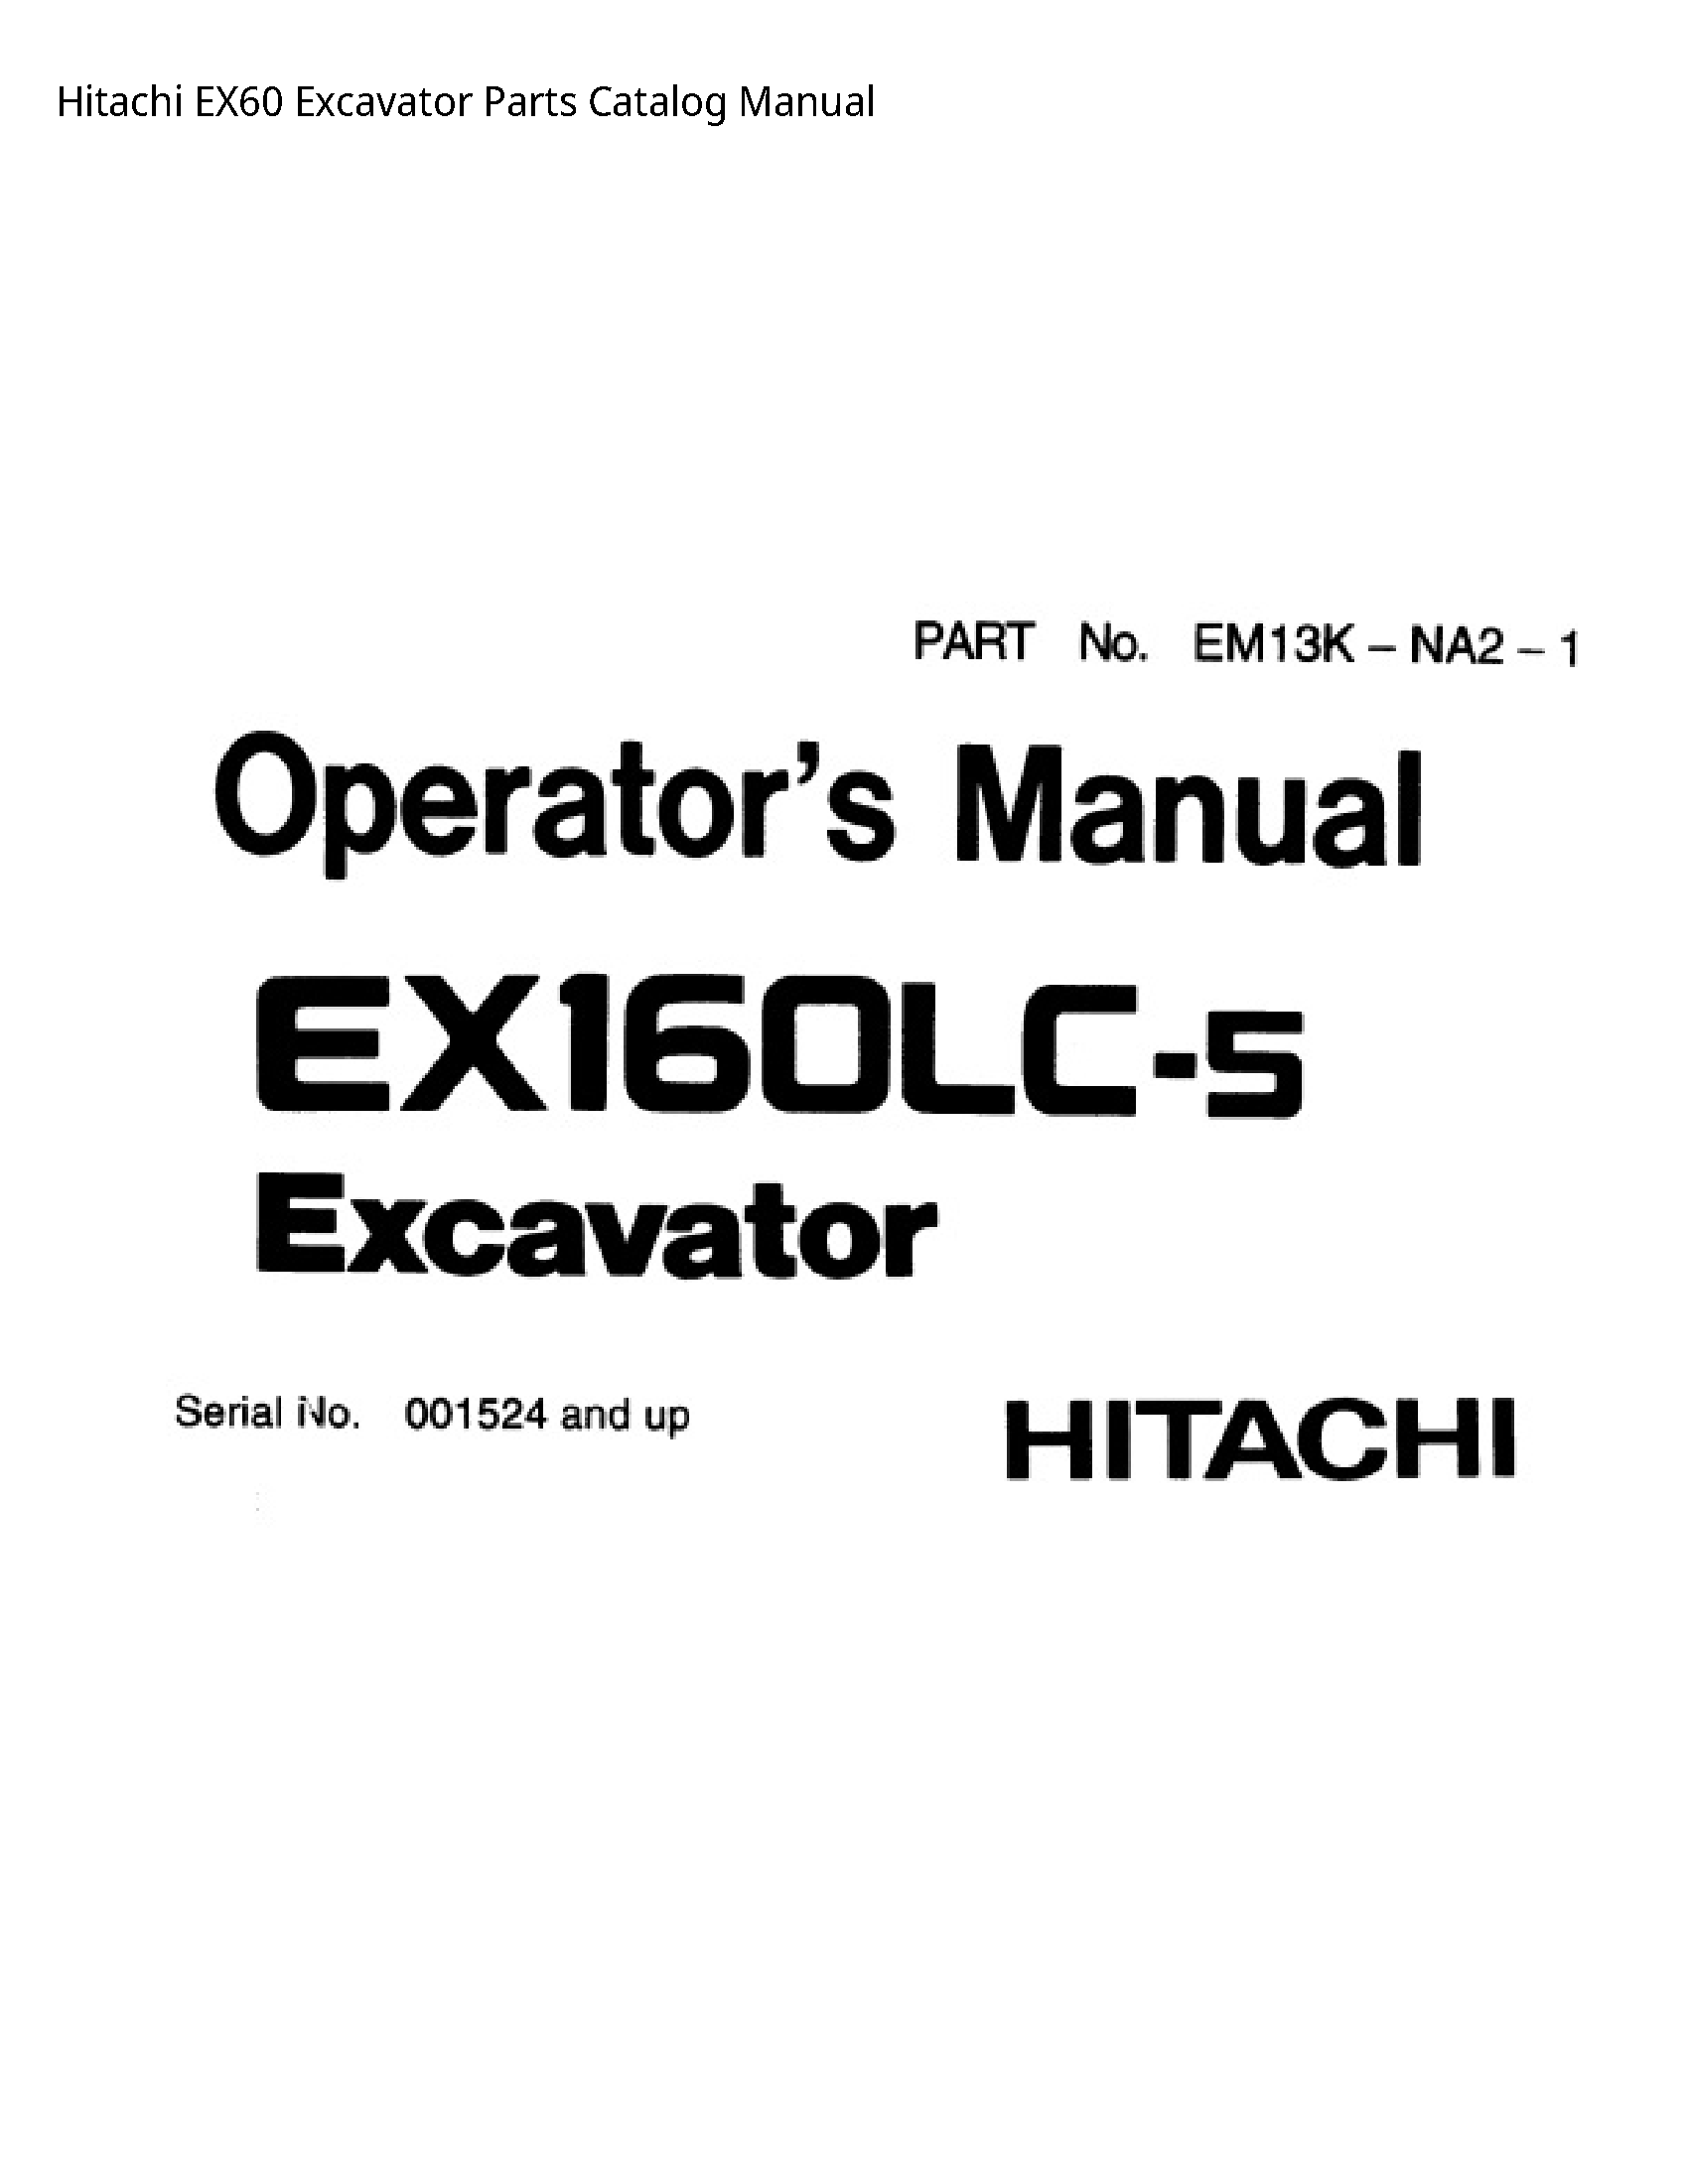 Hitachi EX60 Excavator Parts Catalog manual